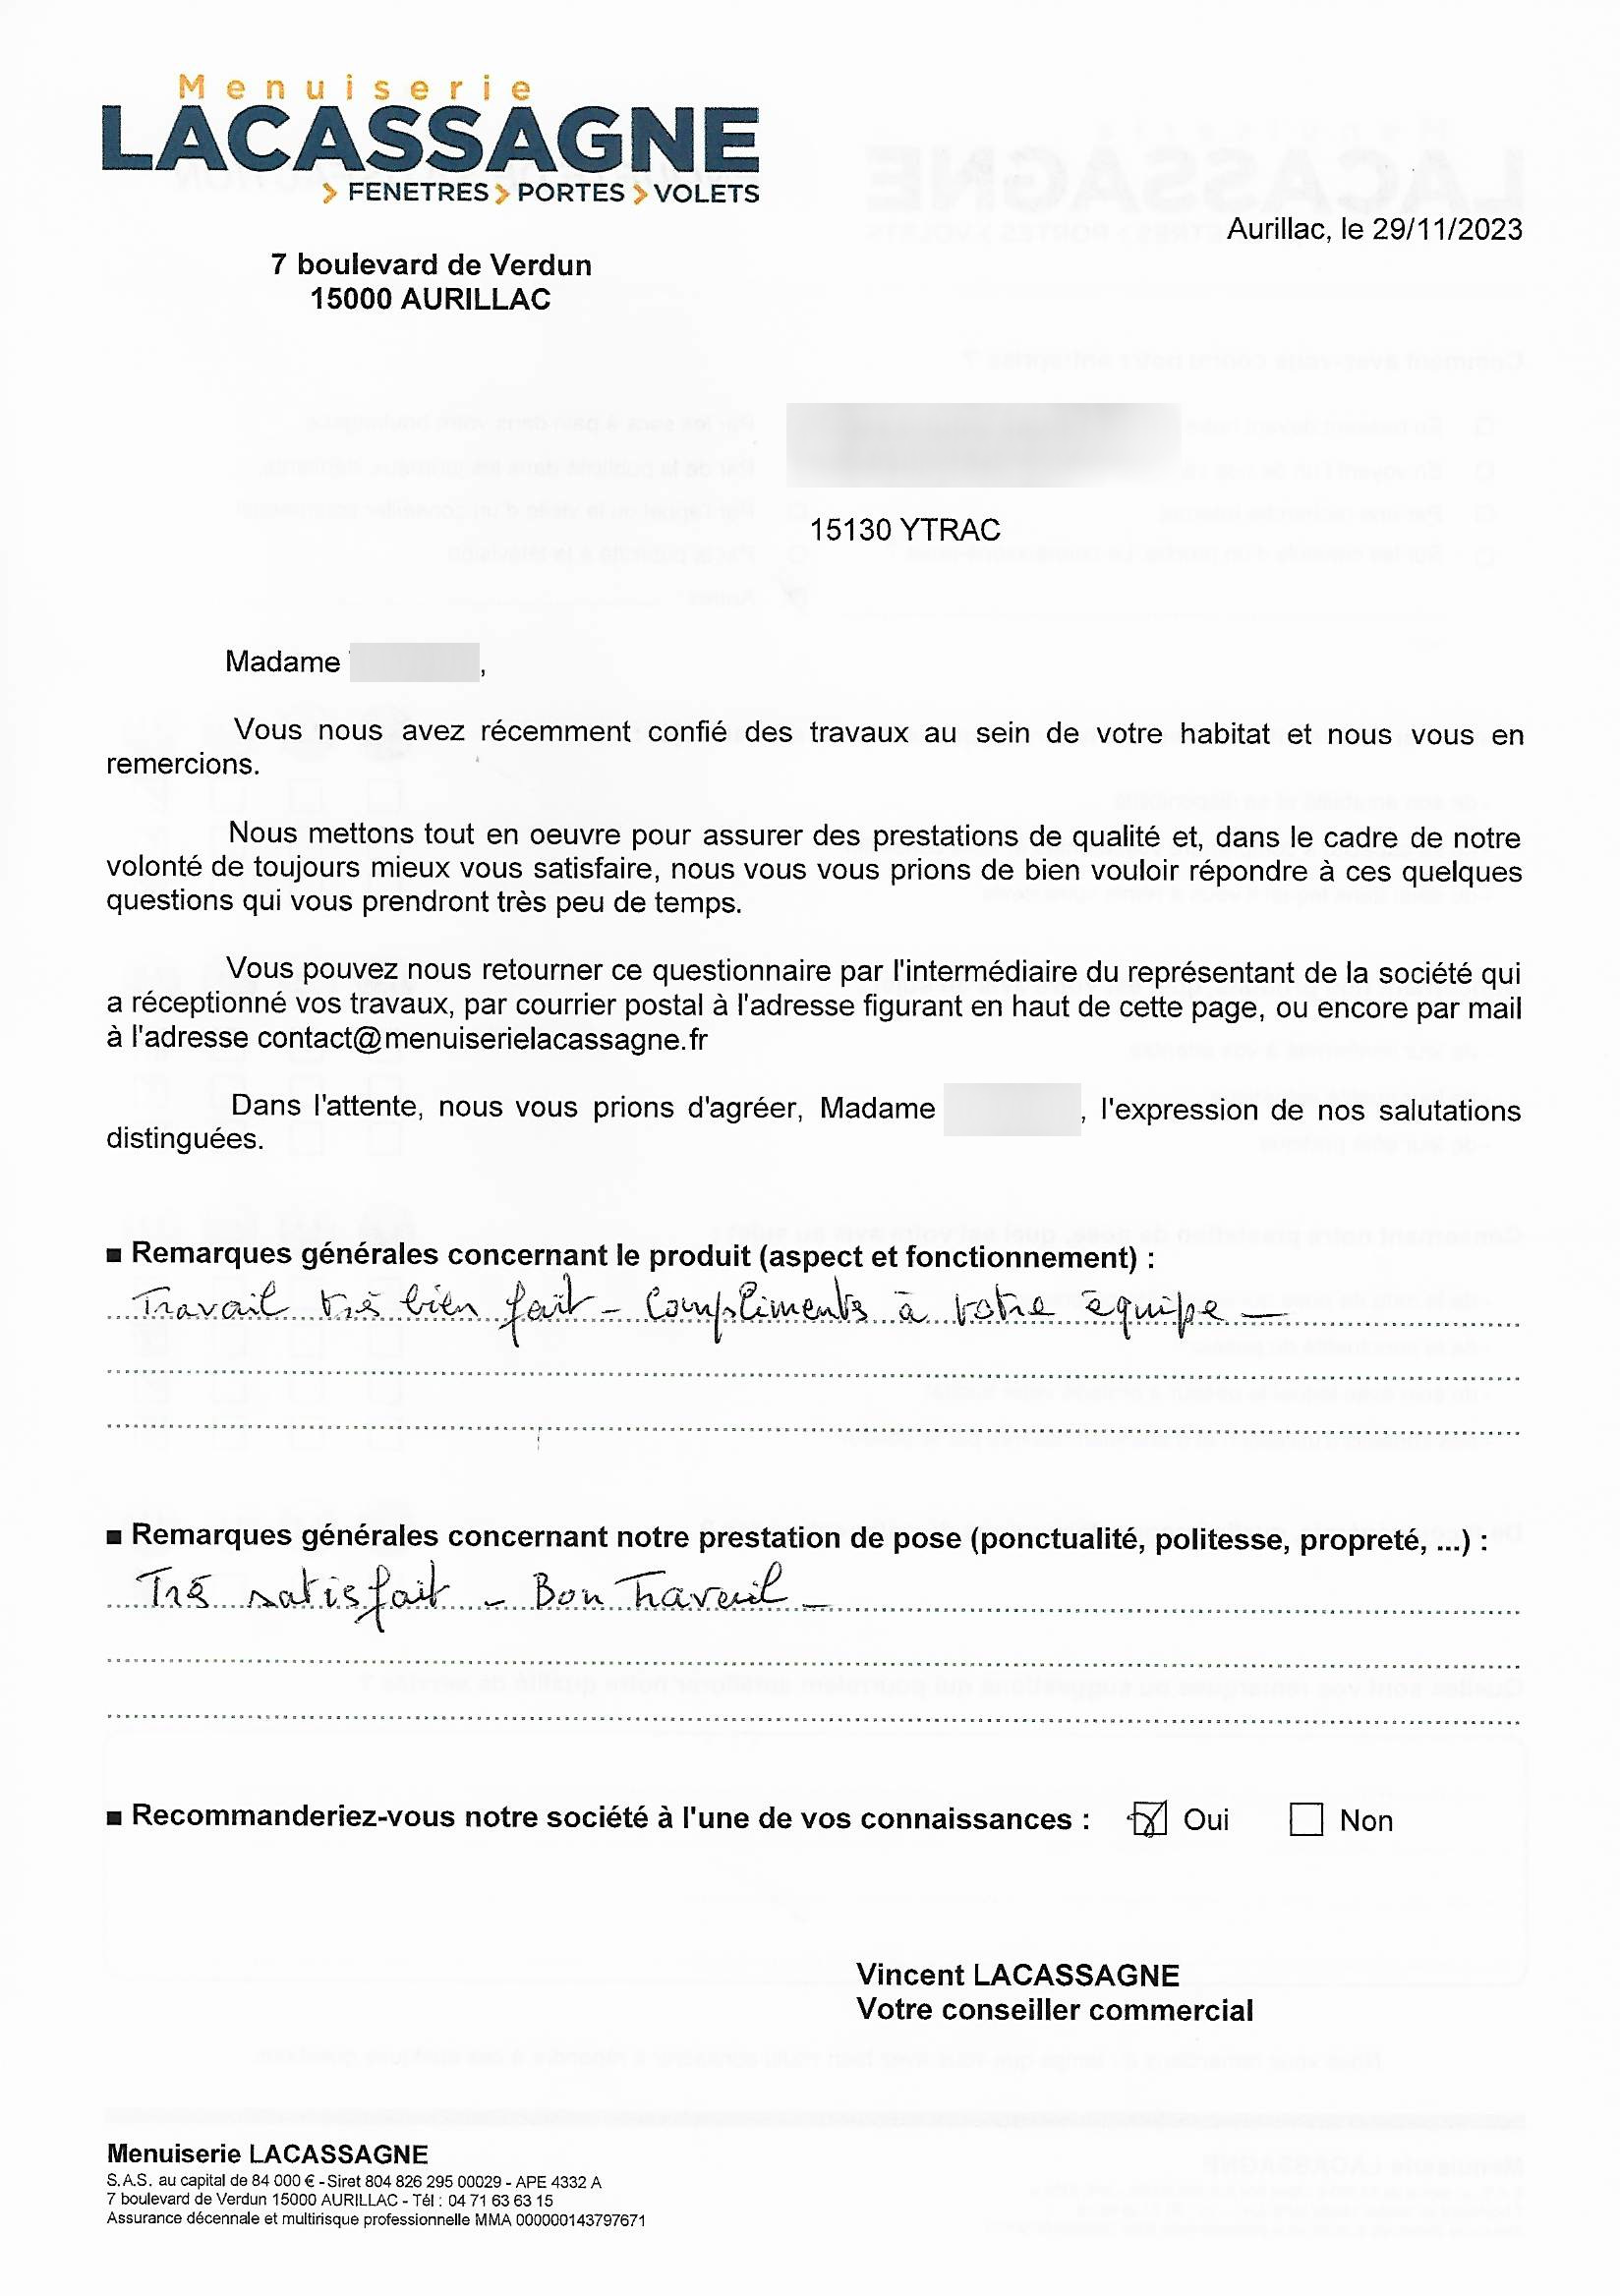 Menuiserie LACASSAGNE à AURILLAC - SATISFACTION CLIENT 2024-03-15